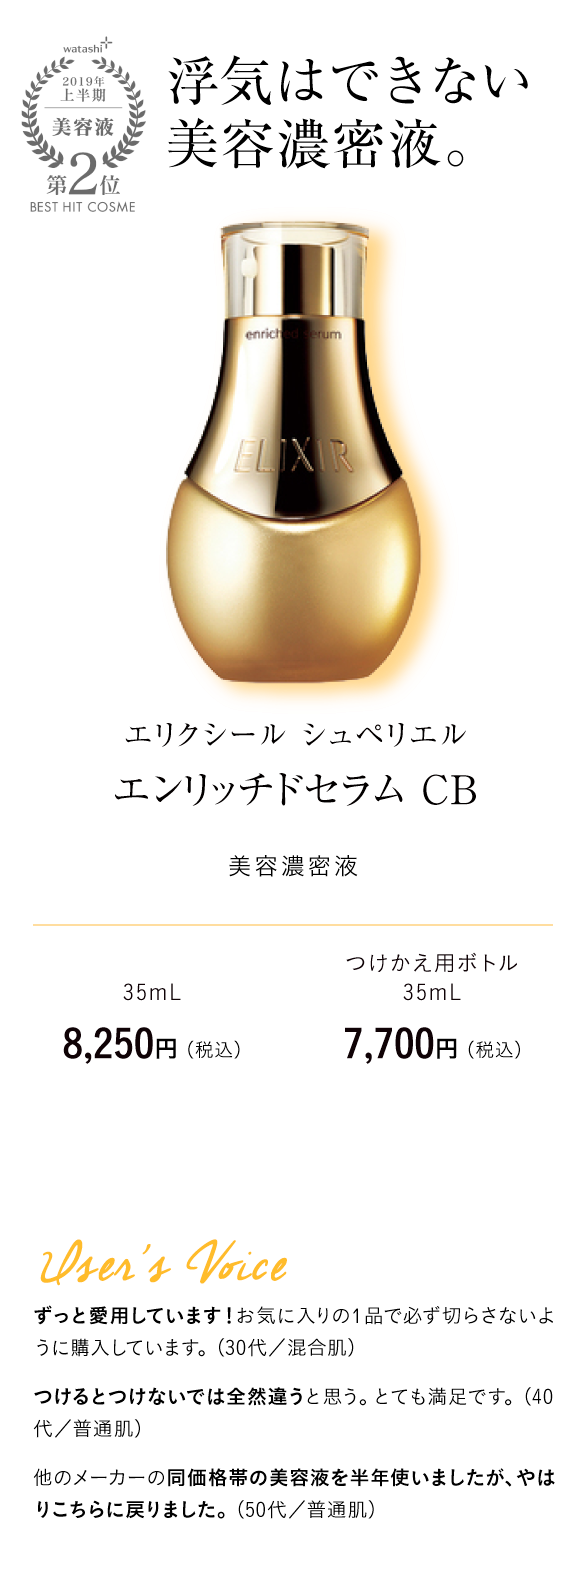 watashi+2019年上半期美容液第2位BEST HIT COSME 浮気はできない美容濃密液。 エリクシール シュペリエル エンリッチドセラム CB 美容濃密液 35mL　8,250円 （税込） つけかえ用ボトル35mL 7,700円 （税込）User's Voice ずっと愛用しています！お気に入りの1品で必ず切らさないように購入しています。（30代／混合肌）つけるとつけないでは全然違うと思う。とても満足です。（40代／普通肌）他のメーカーの同価格帯の美容液を半年使いましたが、やはりこちらに戻りました。（50代／普通肌）